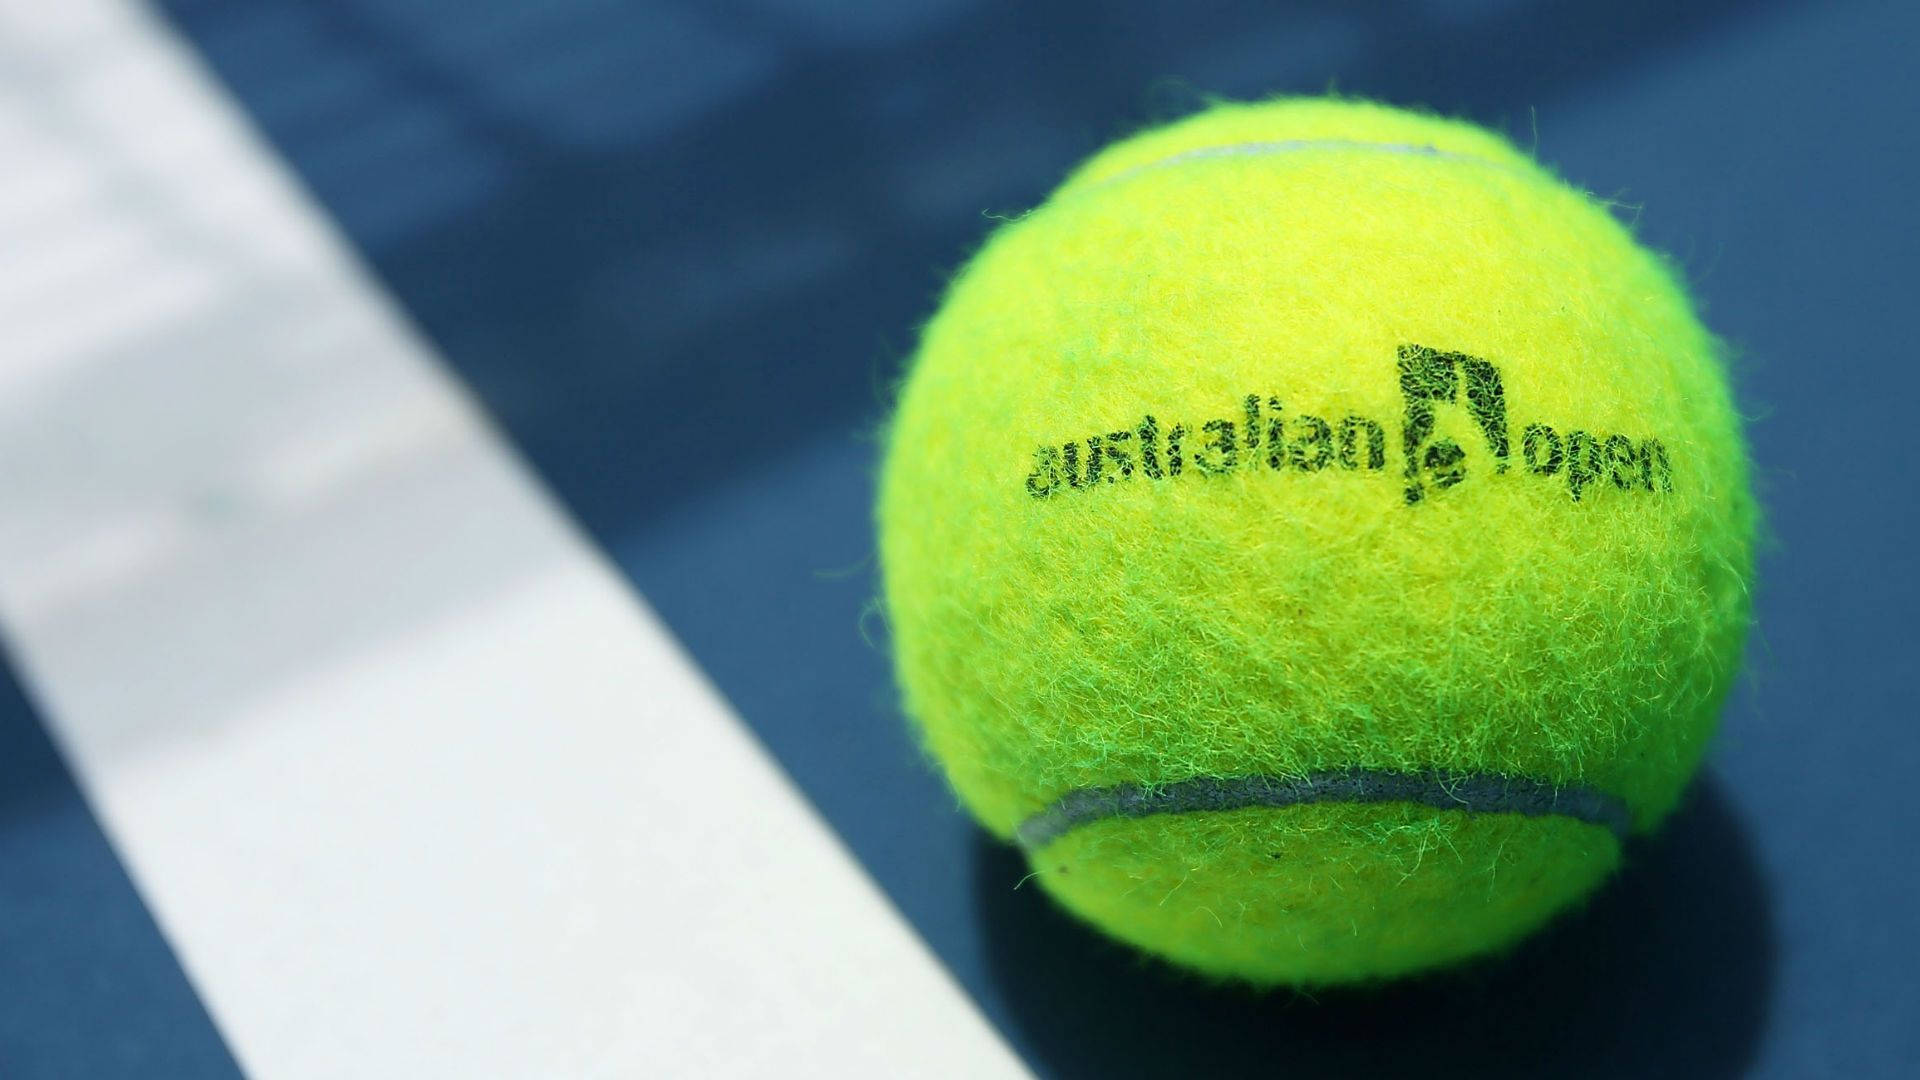 Caption: Intense Focus: Close Shot Of Tennis Ball At Australian Open